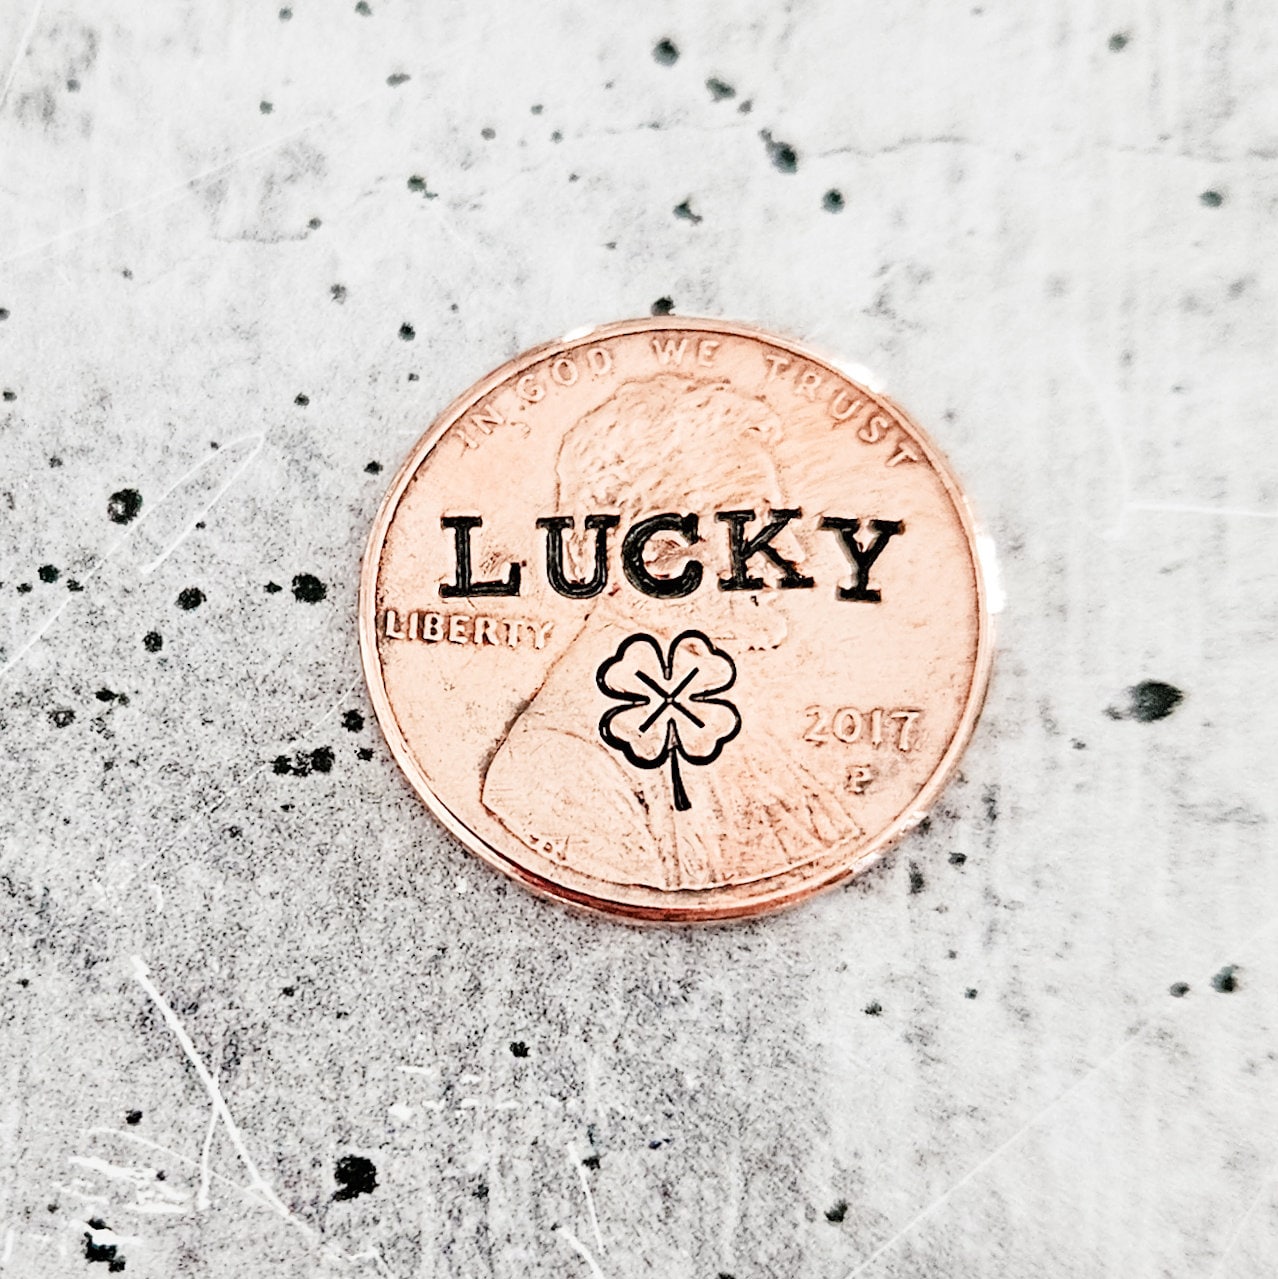 Lucky Penny Four Leaf Clover Irish Keychain - St. Patrick's Day Lucky Penny Good Luck Charm Salt and Sparkle